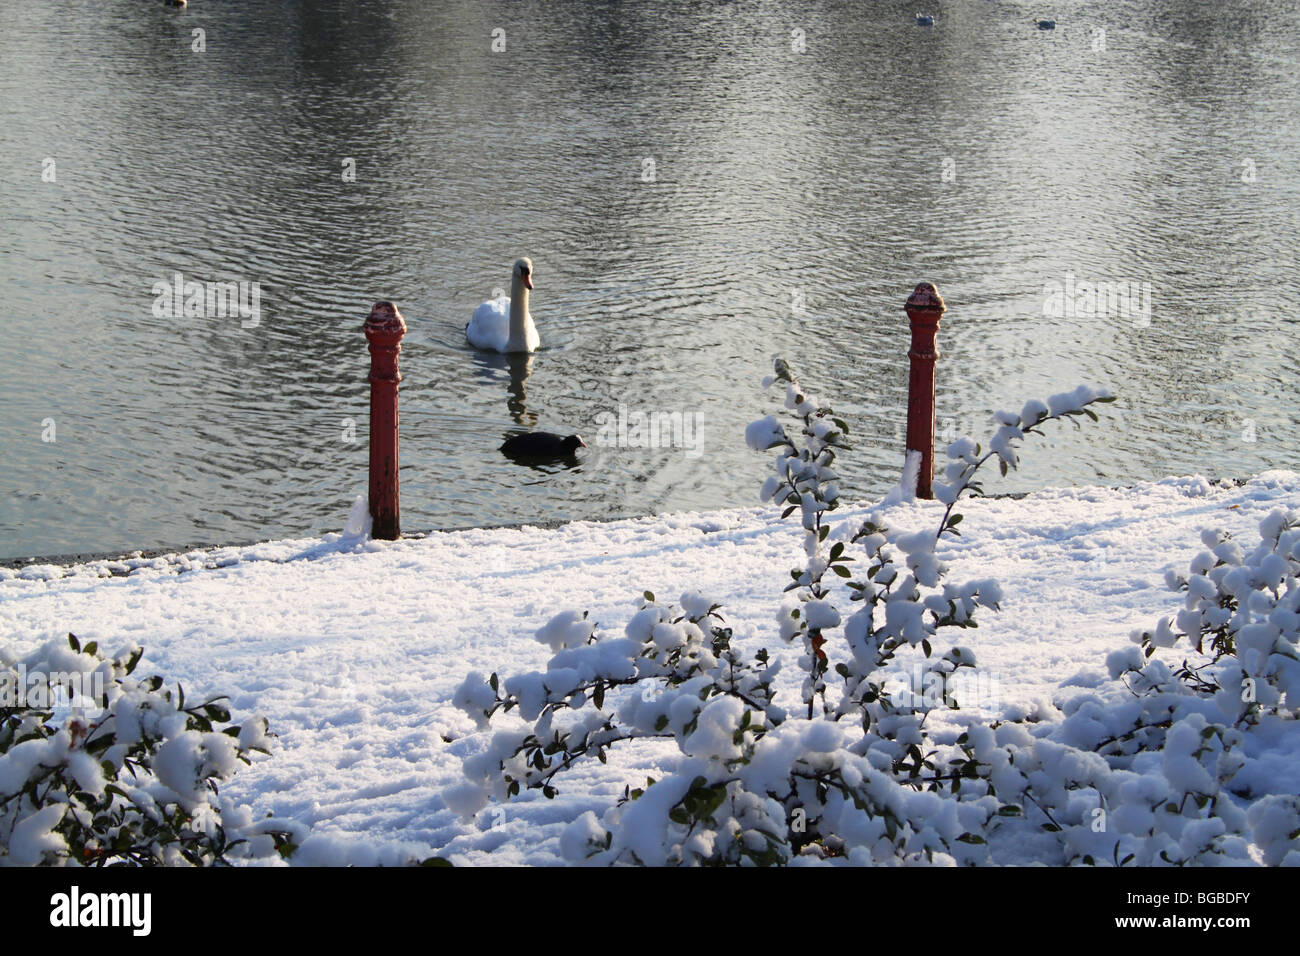 Glisser à travers Swan lac glacé, Crystal Palace Park, Londres, UK Banque D'Images